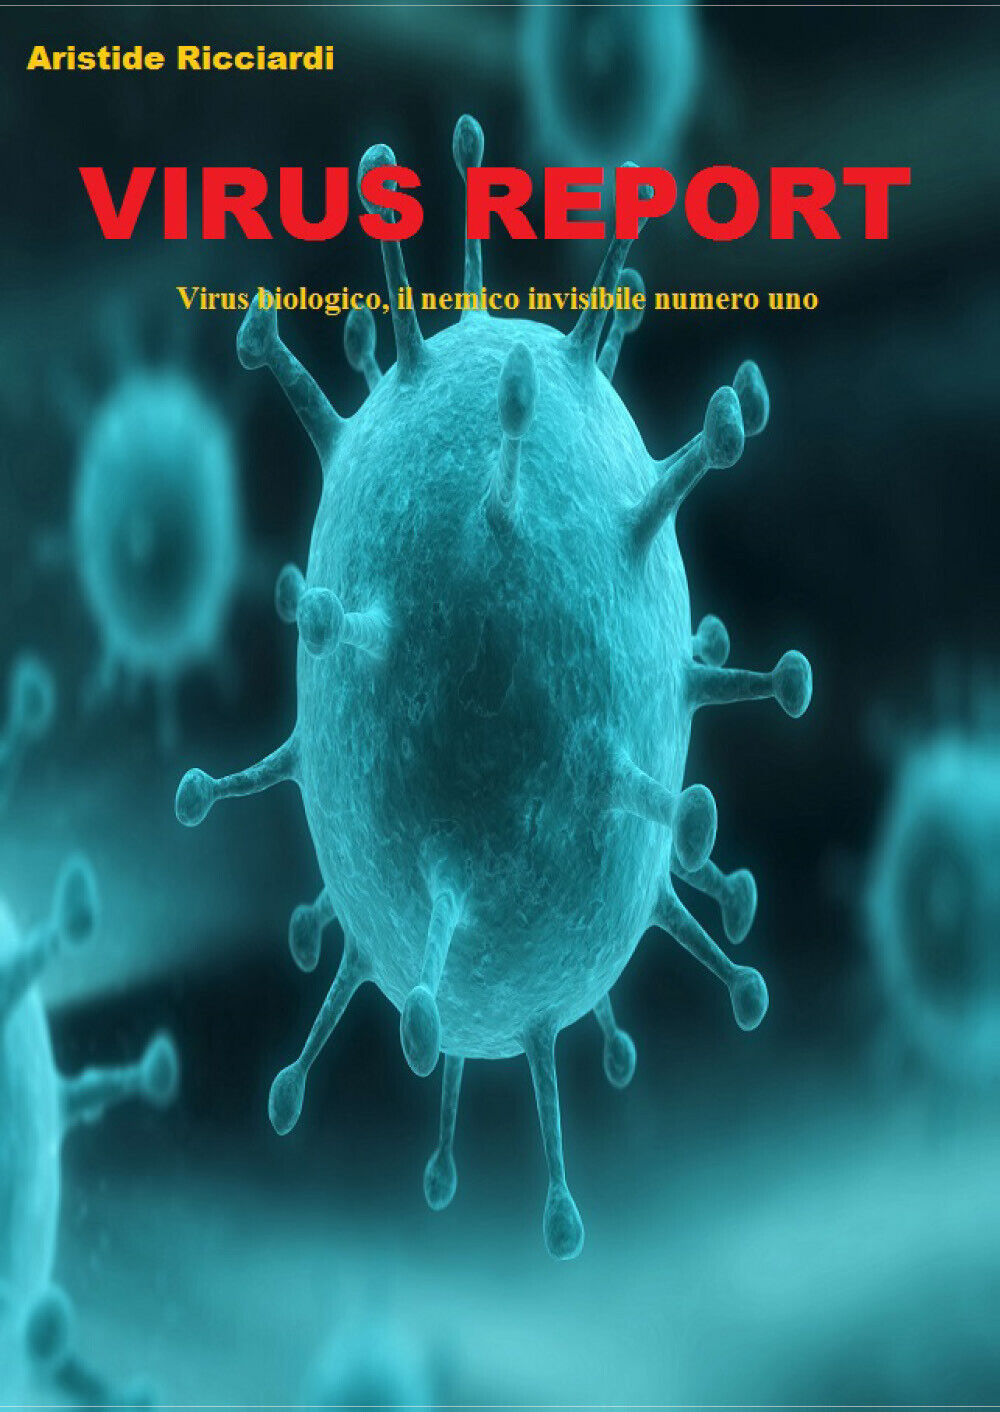 Virus Report -  Aristide Ricciardi,  2018,  Youcanprint